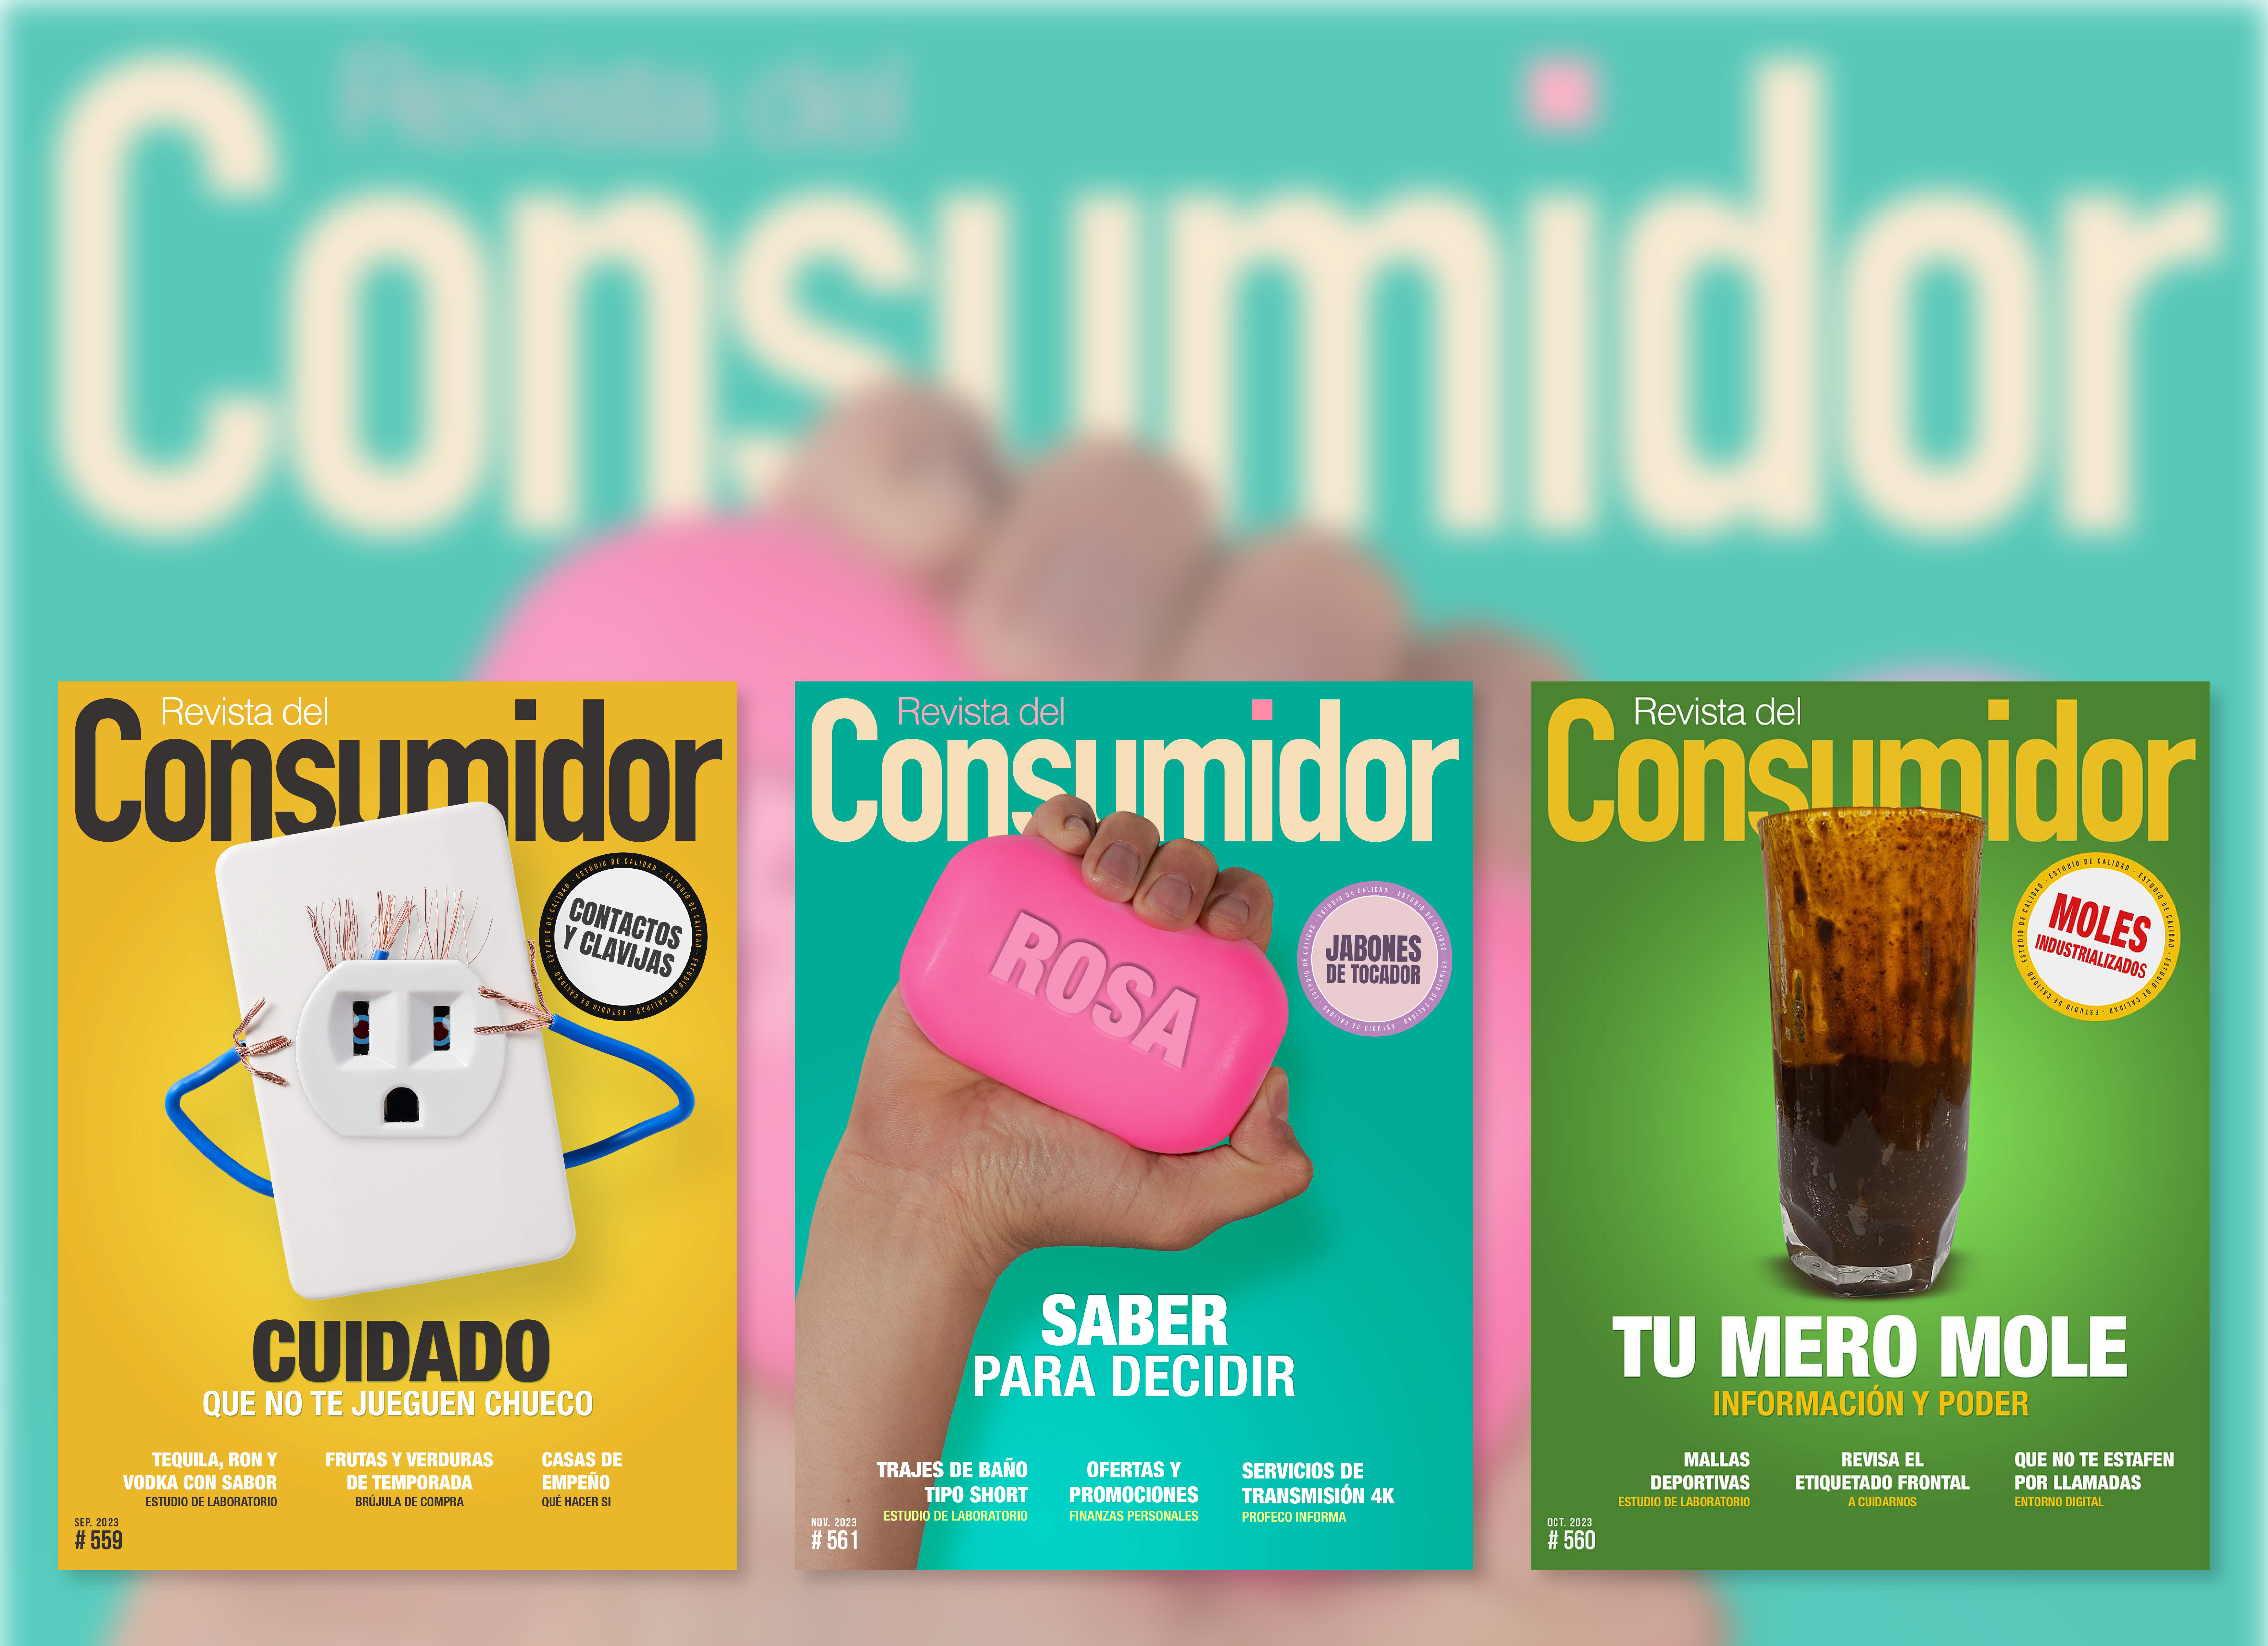 La Revista del Consumidor lleva más de cuatro décadas refrendando un compromiso con los consumidores